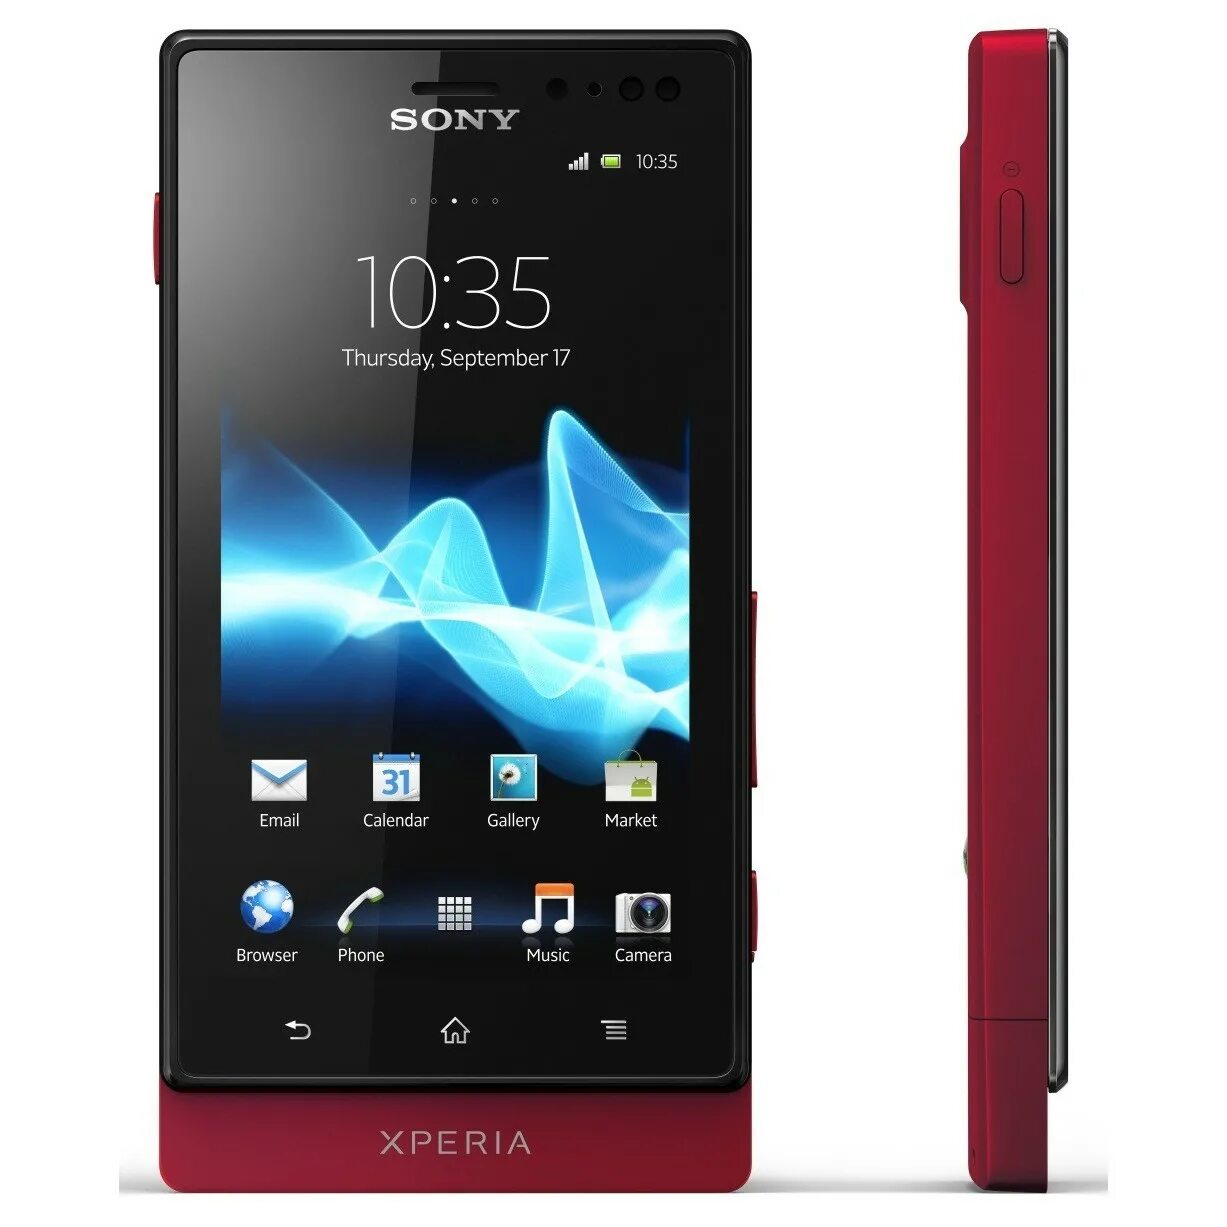 Sony xperia hard. Sony Xperia mt27i. Sony Xperia sola. Sony Xperia sola mt27i. Sony Ericsson Xperia sola mt27i.